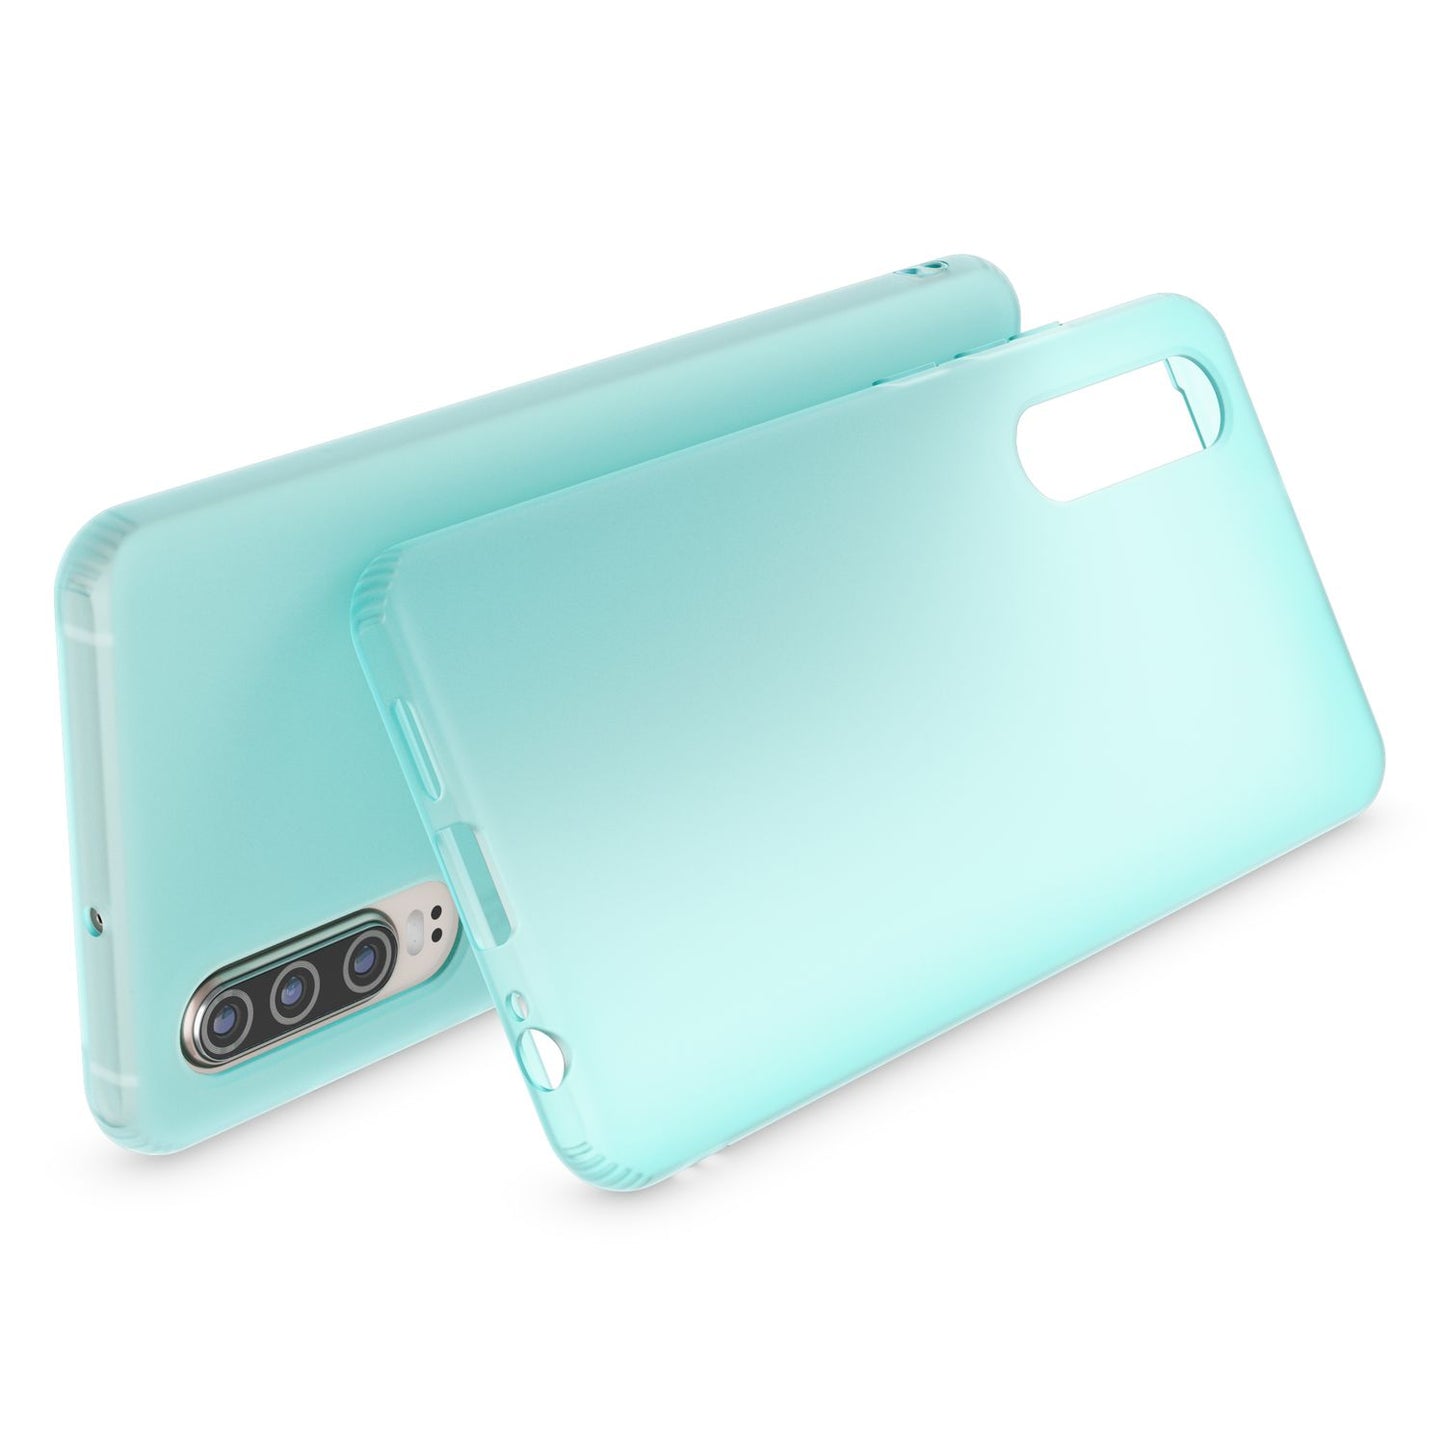 NALIA Handy Handyhülle für Huawei P30, Slim TPU Schutz Tasche Case Cover Bumper Etui